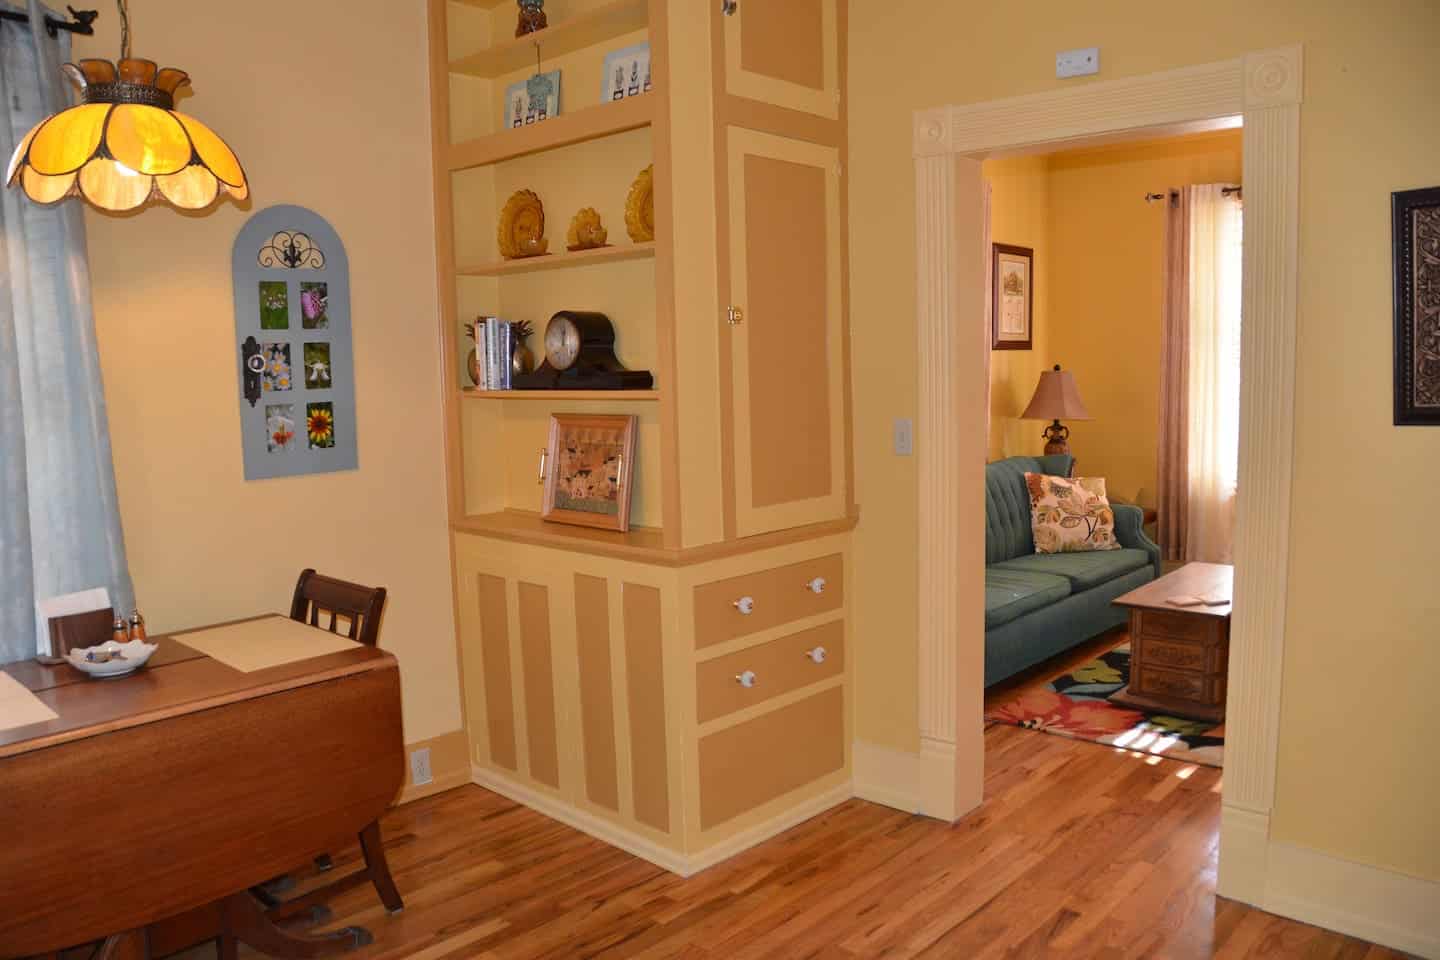 Image of Airbnb rental in Colorado Springs